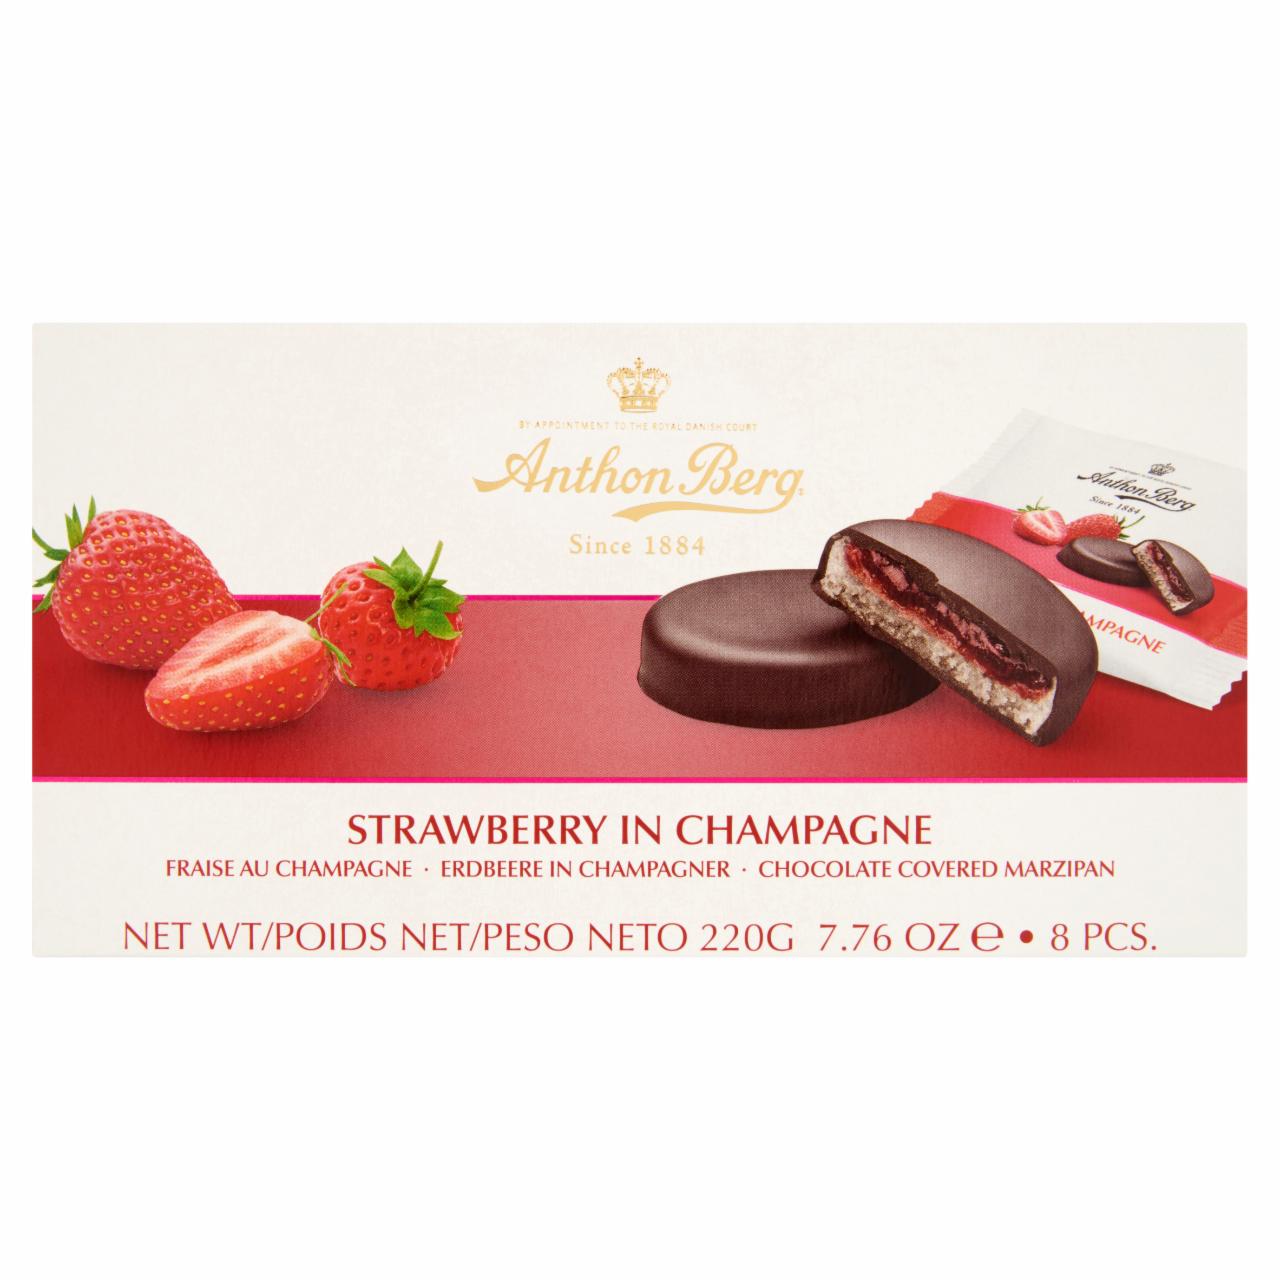 Képek - Anthon Berg csokoládé marcipánnal és pezsgőben lévő eperrel töltve 8 db 220 g